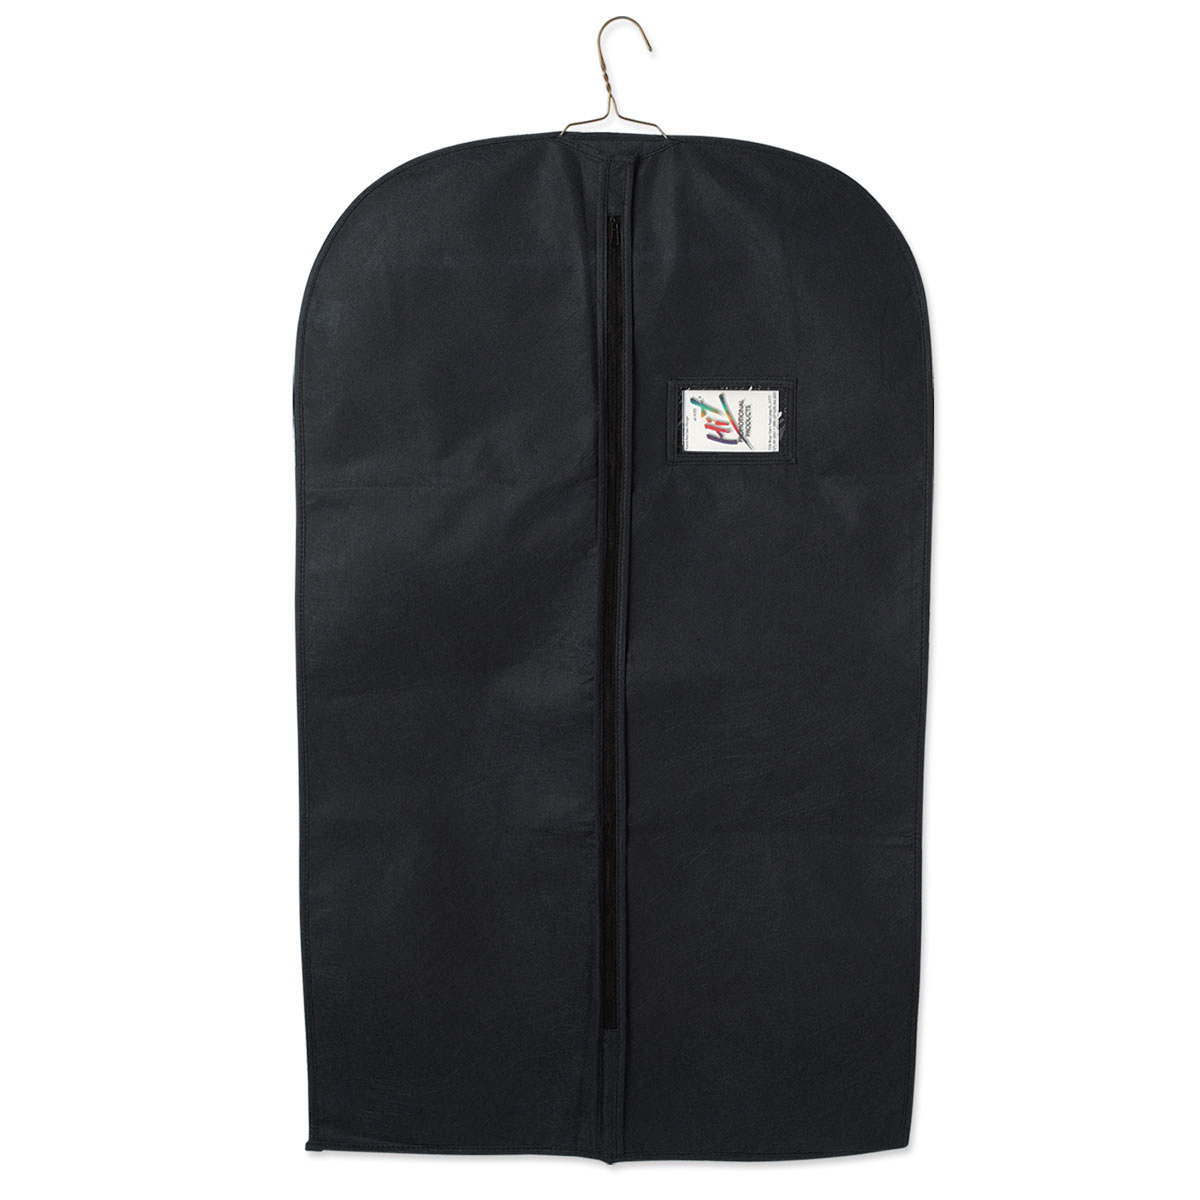 Black Non-Woven Garment Bag